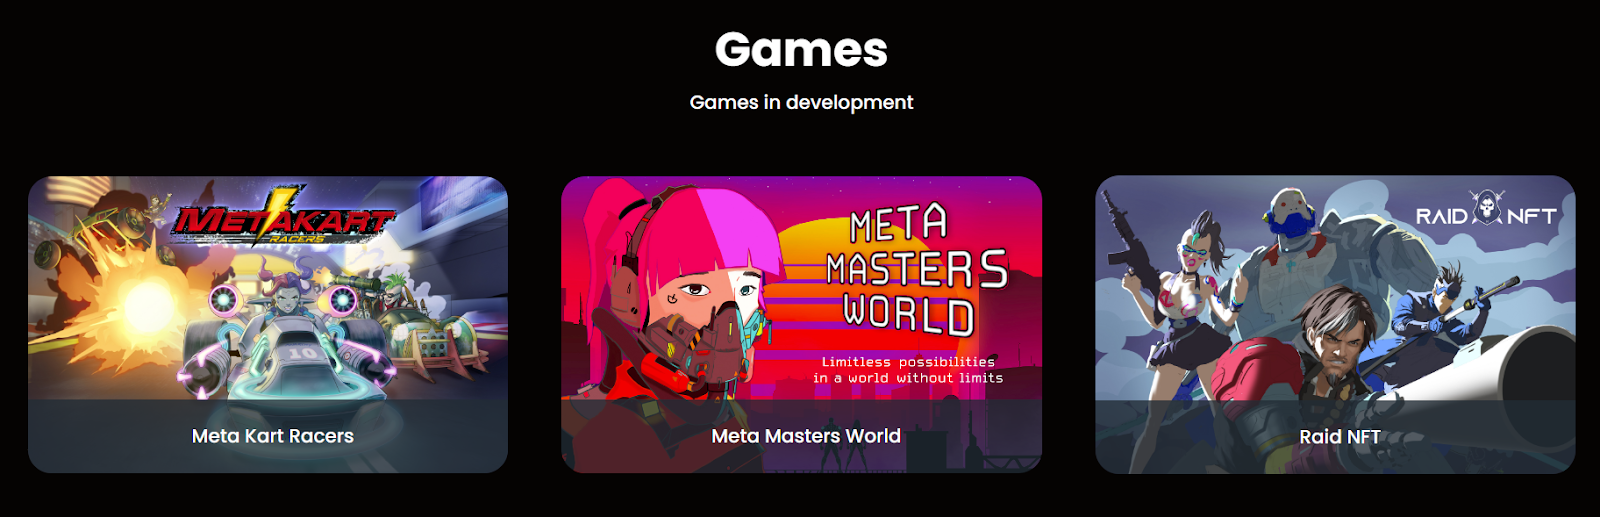 Meta Masters Guild se convierte en la primera plataforma de juegos móviles Web3